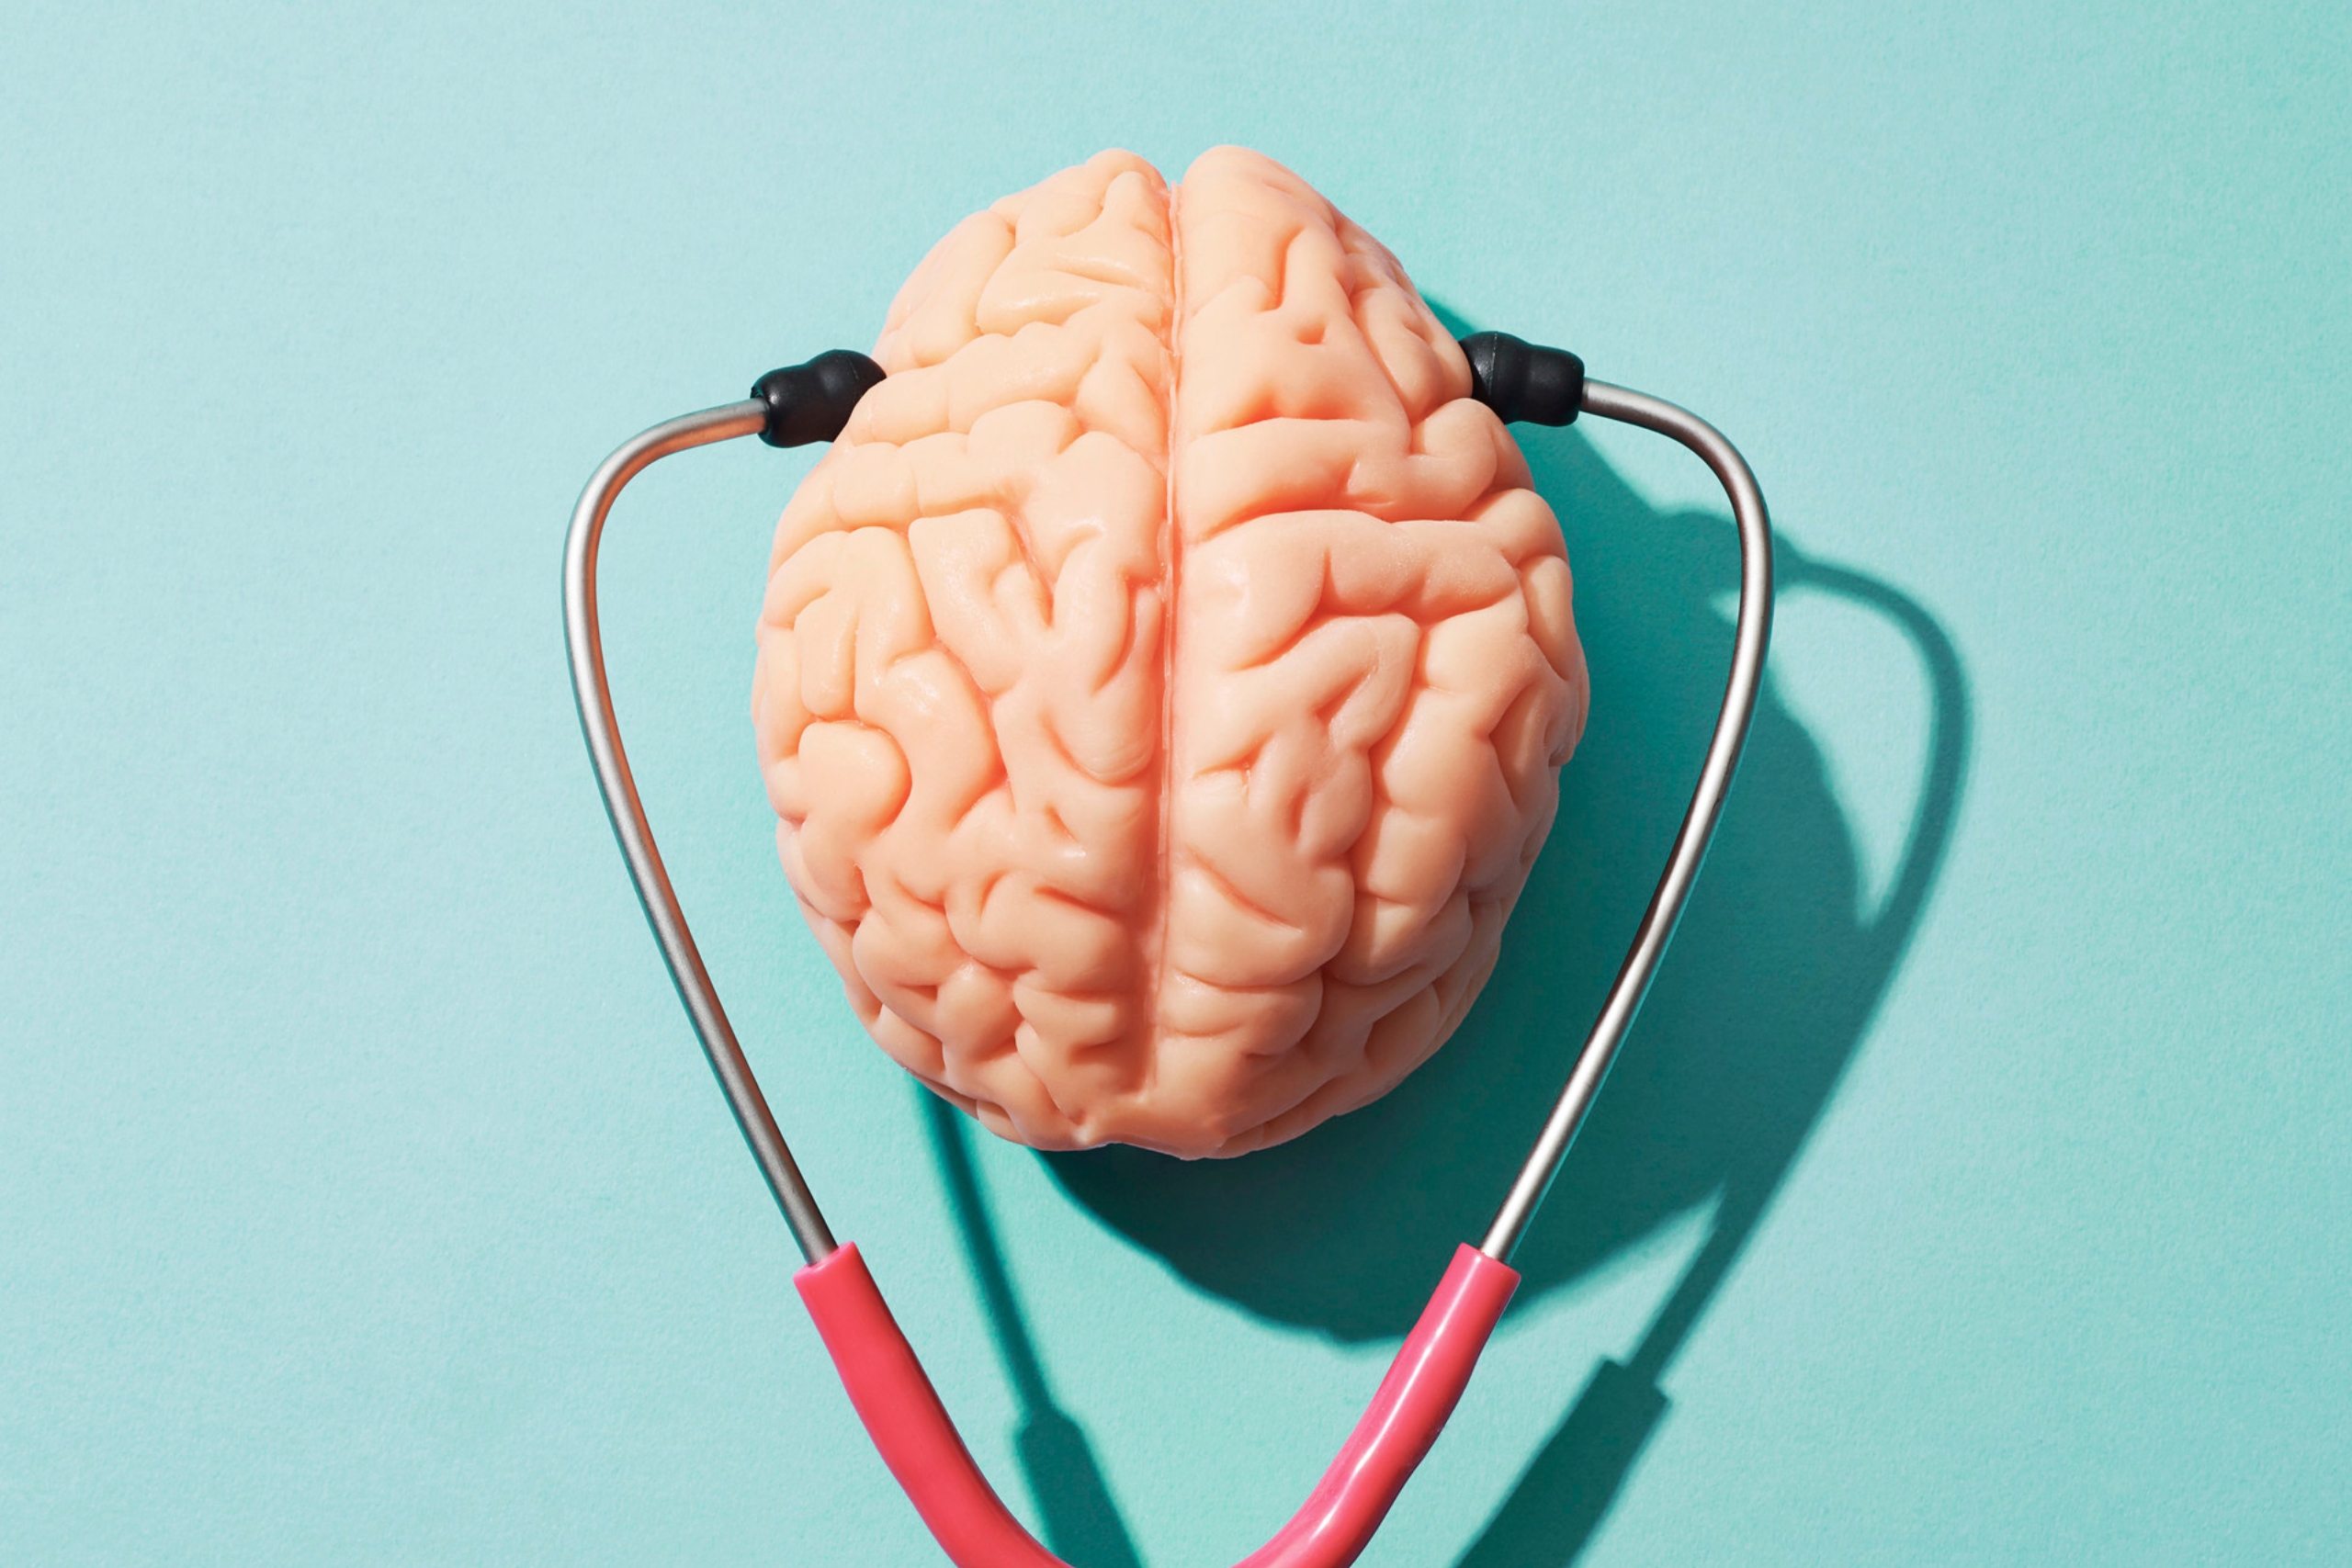 Salud mental representada por un cerebro con un fonendoscopio